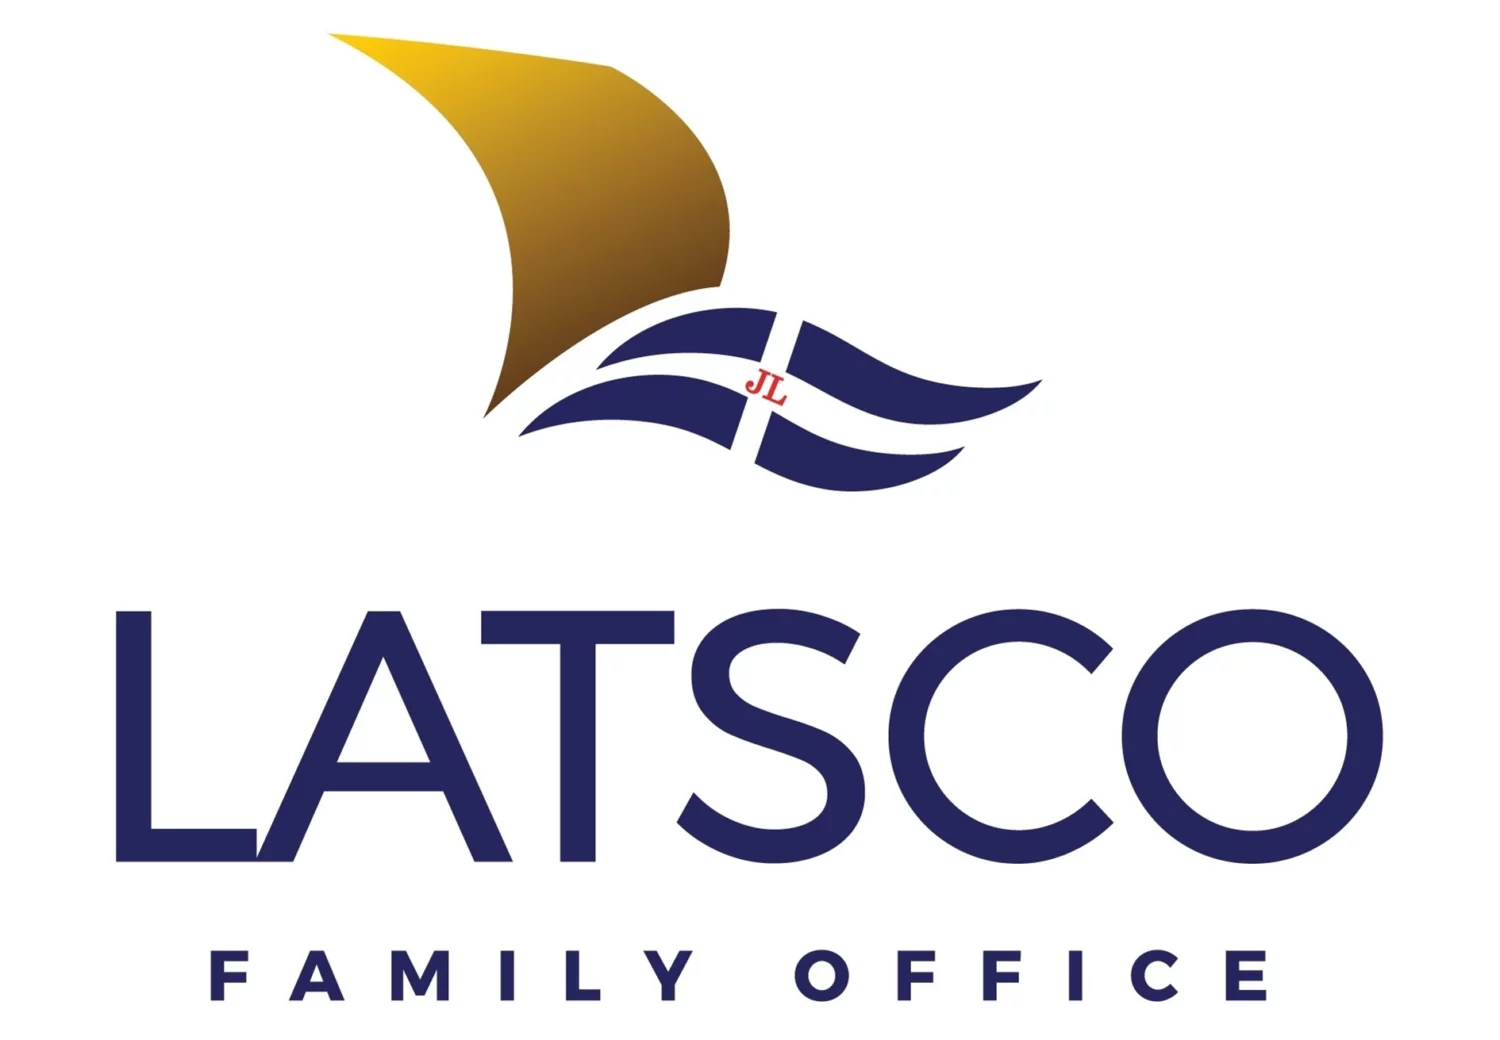 Το Latsco Family Office συμμετέχει στο Επενδυτικό Ταμείο Φαιστός